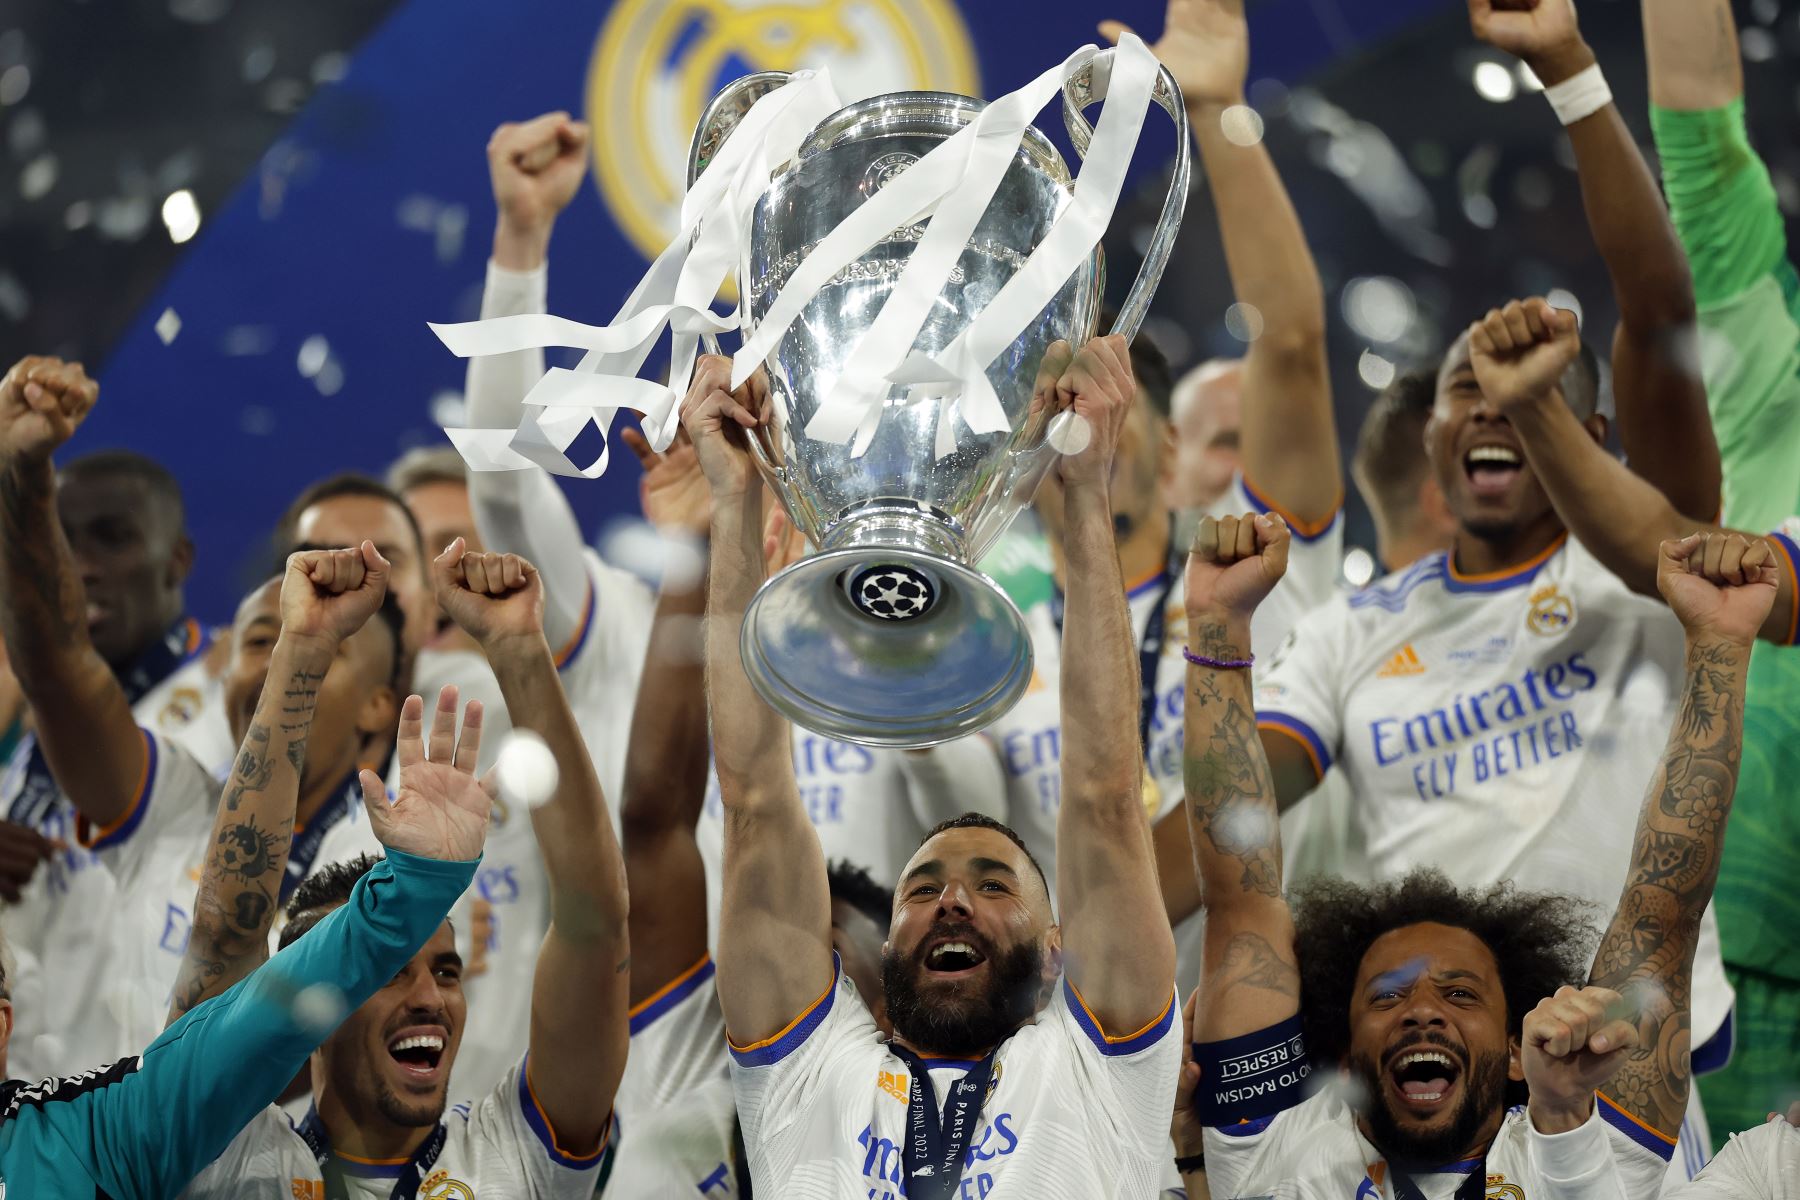 Karim Benzema del Real Madrid levanta el trofeo mientras sus compañeros celebran tras ganar la final de la UEFA Champions League. Foto: EFE